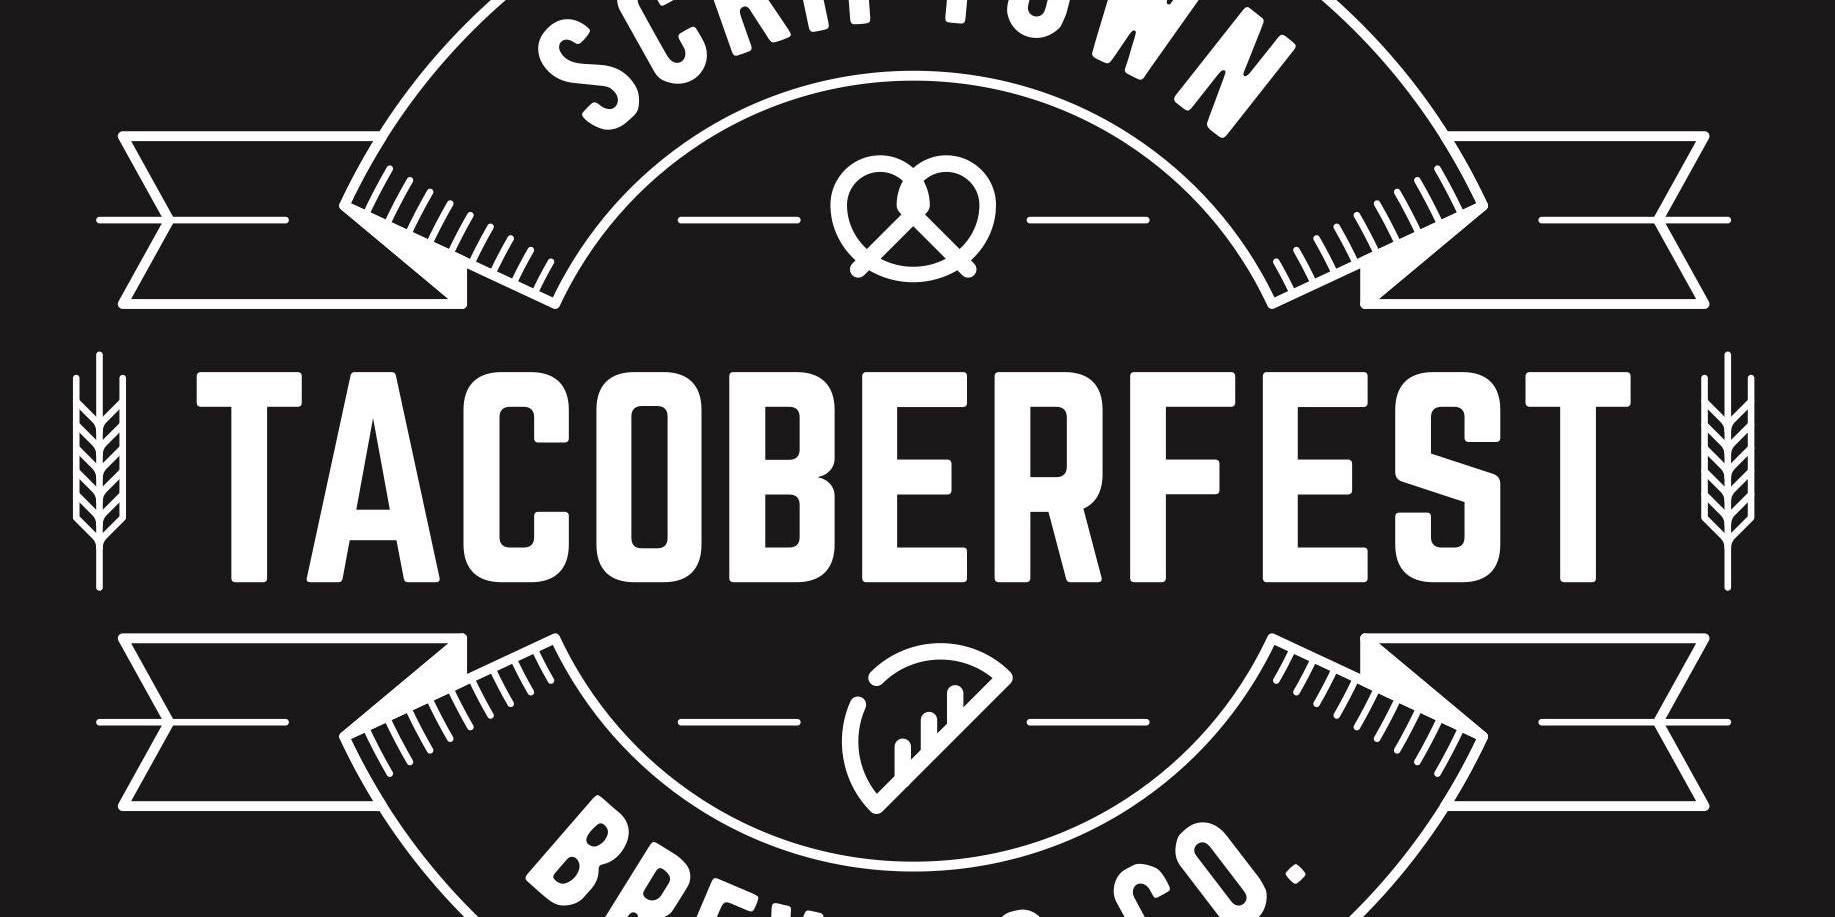 Tacoberfest 2022 promotional image